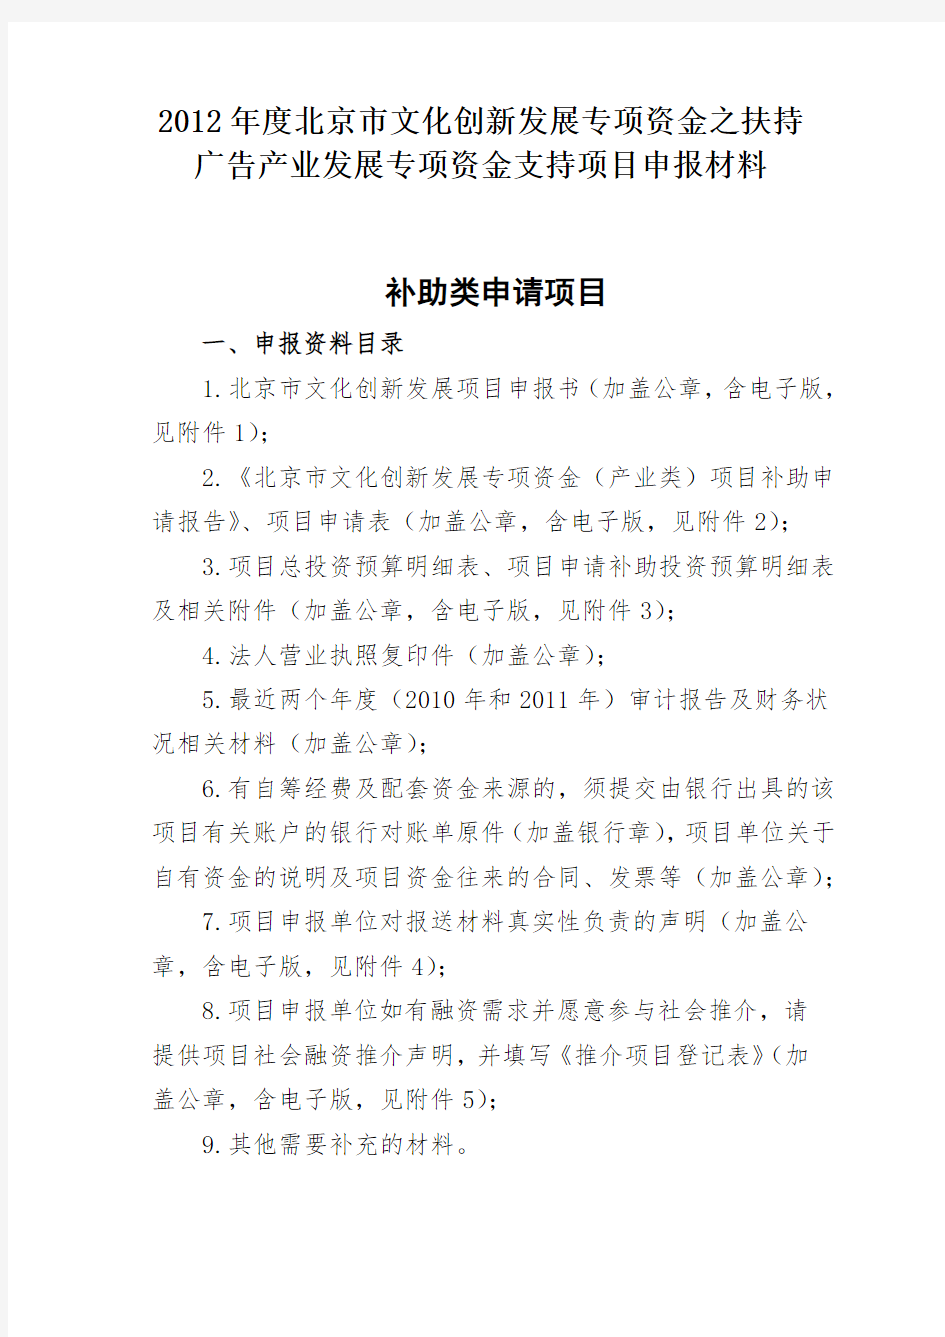 2012年度北京市文化创新发展专项资金之扶持广告产业发展专项资金支持项目申报材料补助类申请项目